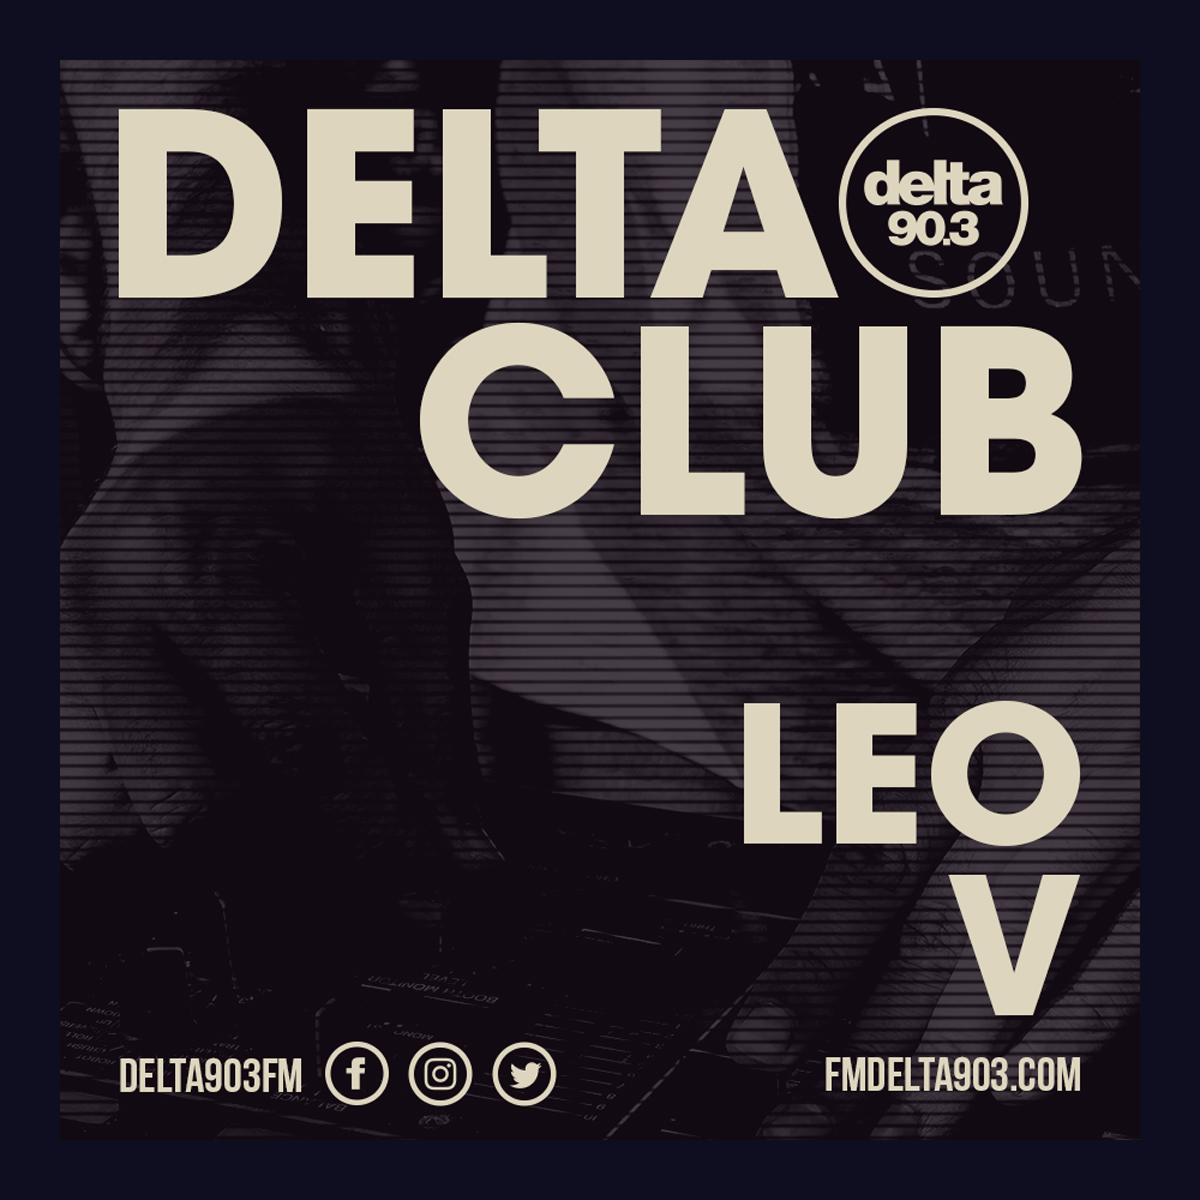 Delta Podcasts - Delta Club presents Leo V (04.07.2018)